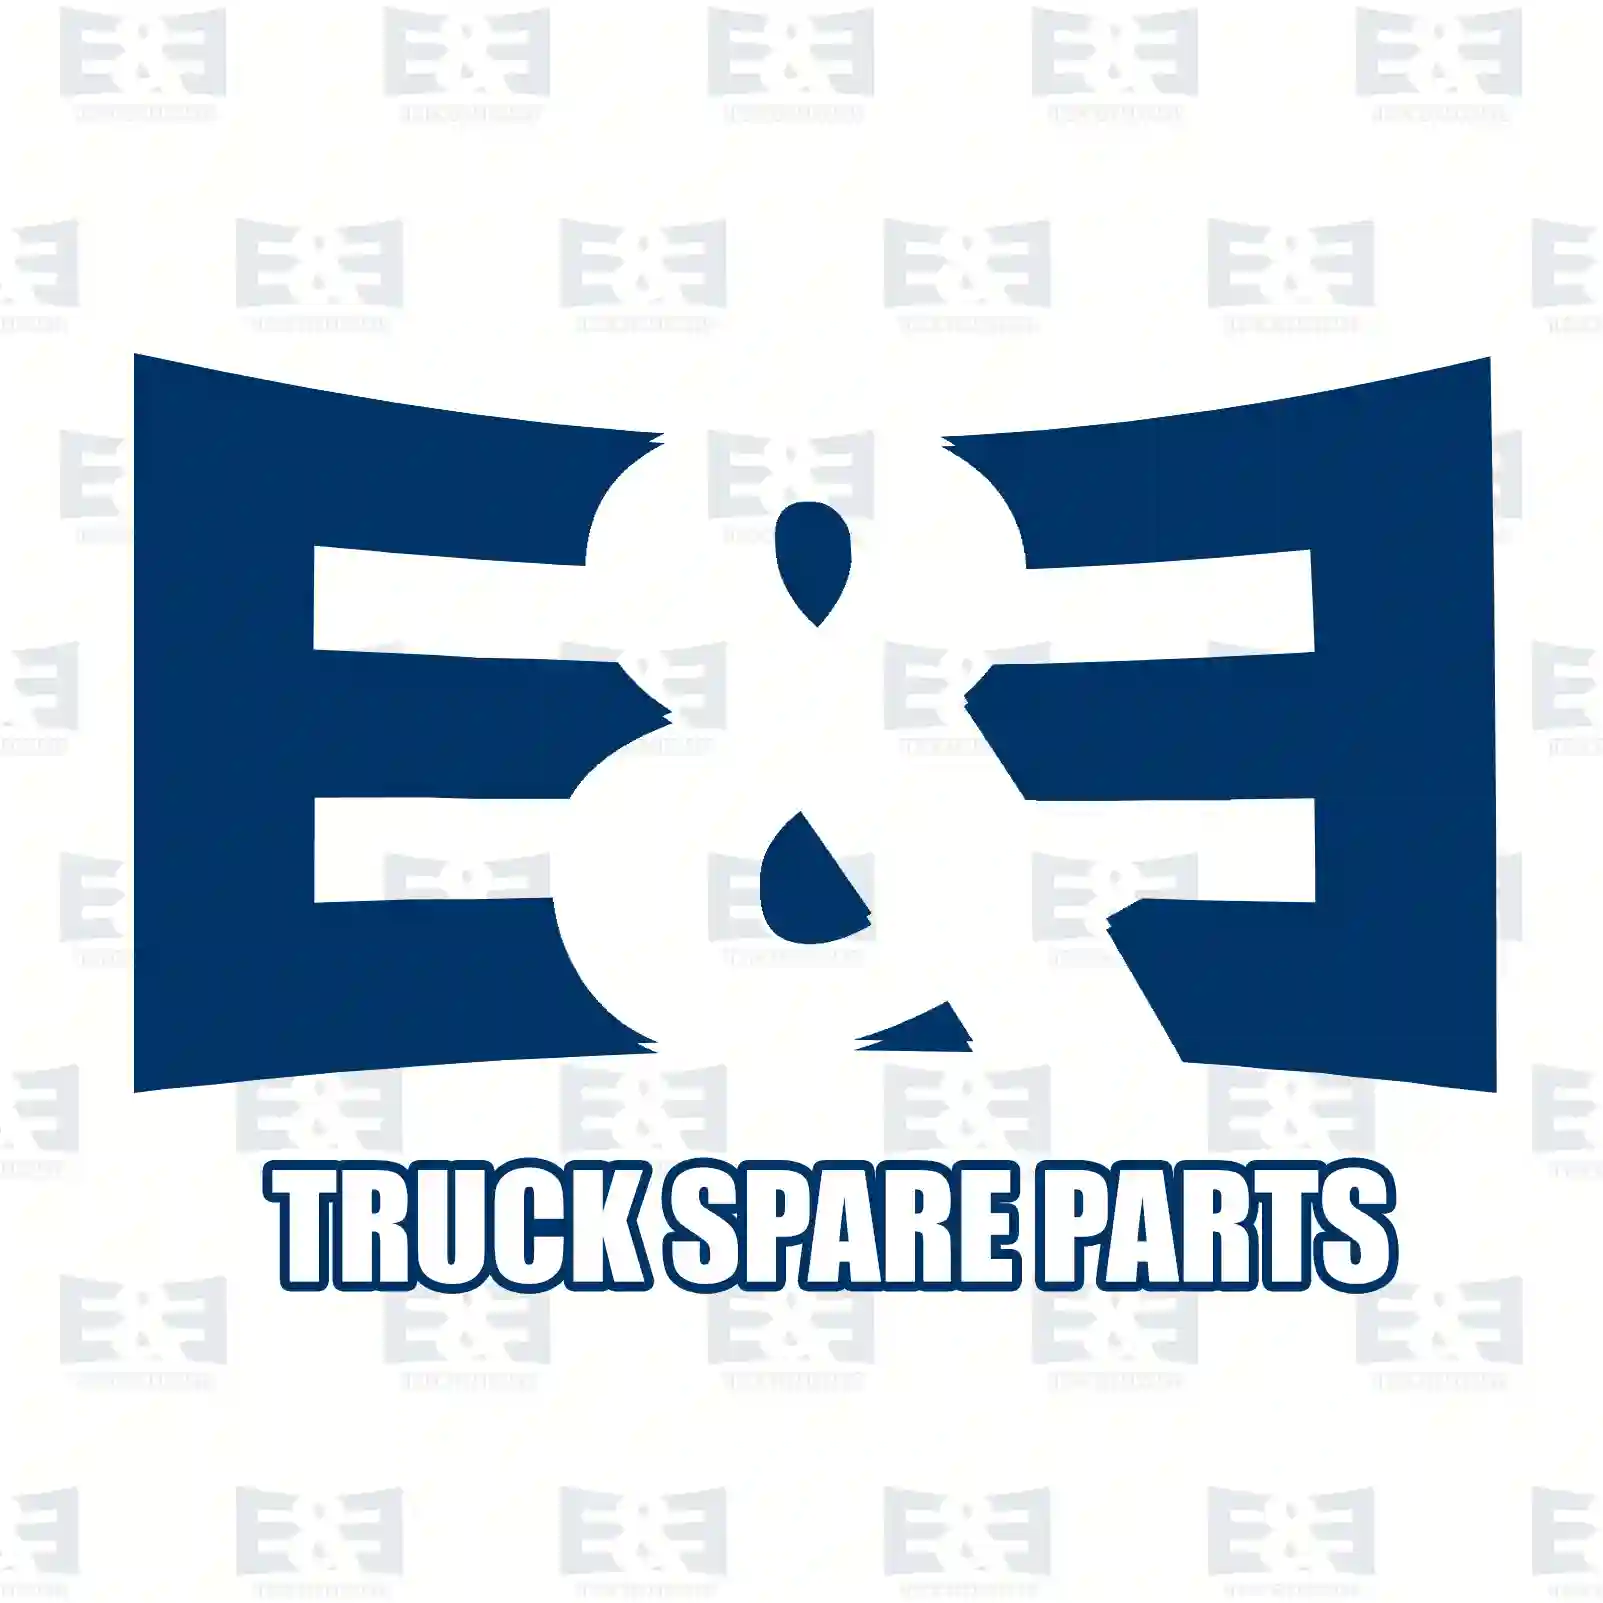 Brake disc, 2E2297510, MBR5031, 6775223, 6775227, 67752279, 6775229, ||  2E2297510 E&E Truck Spare Parts | Truck Spare Parts, Auotomotive Spare Parts Brake disc, 2E2297510, MBR5031, 6775223, 6775227, 67752279, 6775229, ||  2E2297510 E&E Truck Spare Parts | Truck Spare Parts, Auotomotive Spare Parts